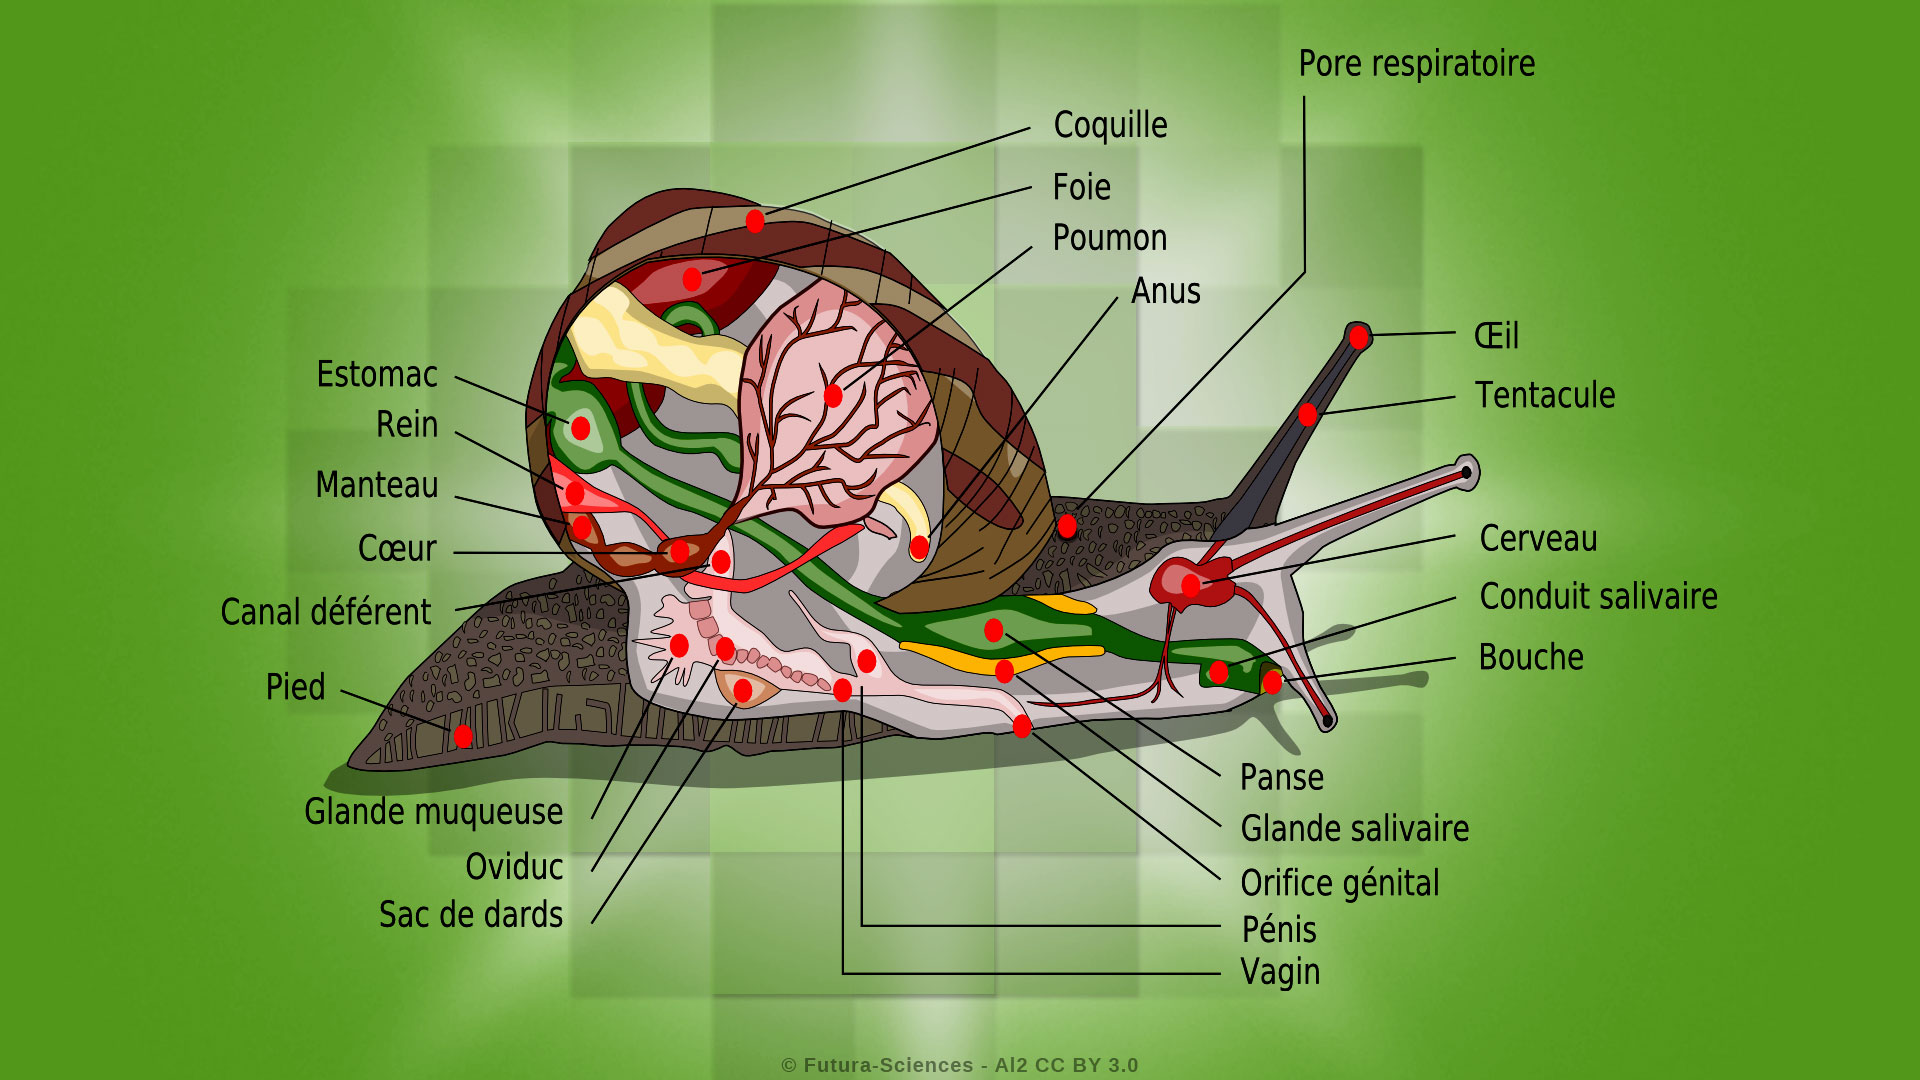 L'escargot et ses organes internes torsadés